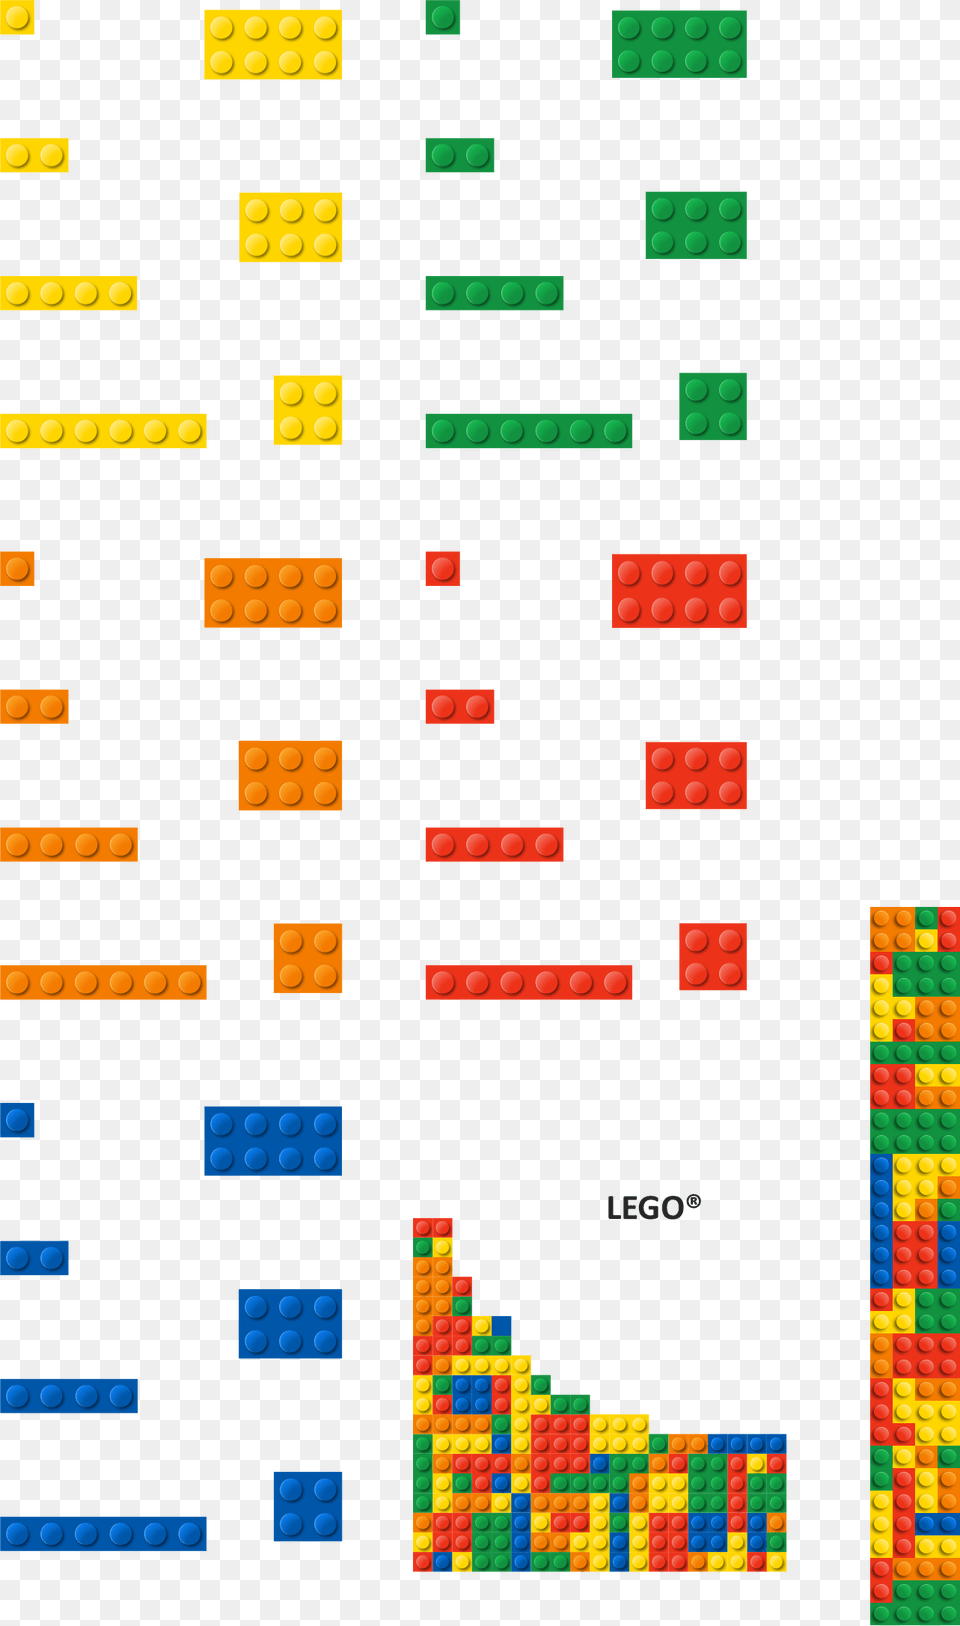 Lego Bricks Illustration, Electronics, Mobile Phone, Phone Png Image